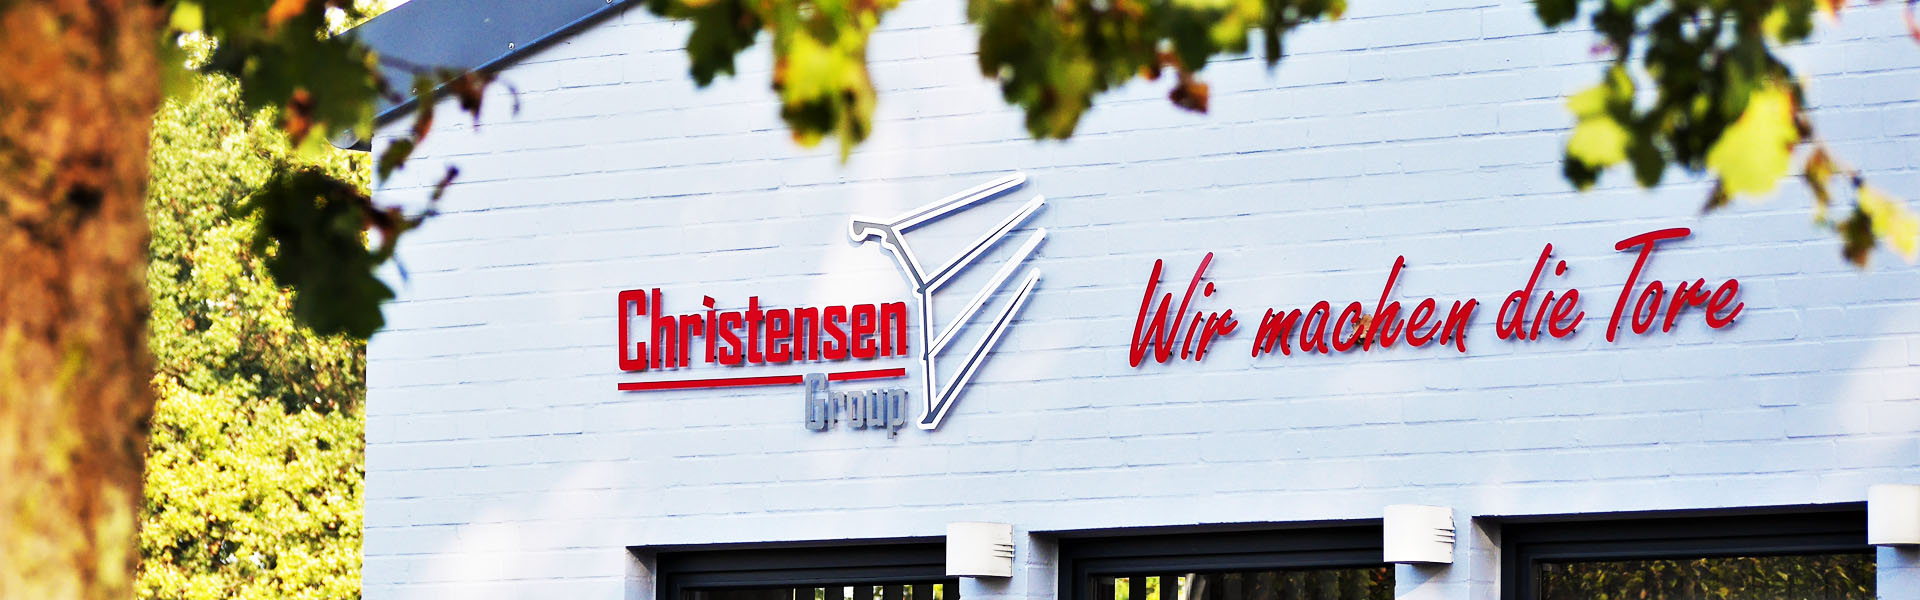 Kontakt zur Christensen Group lohnt sich.